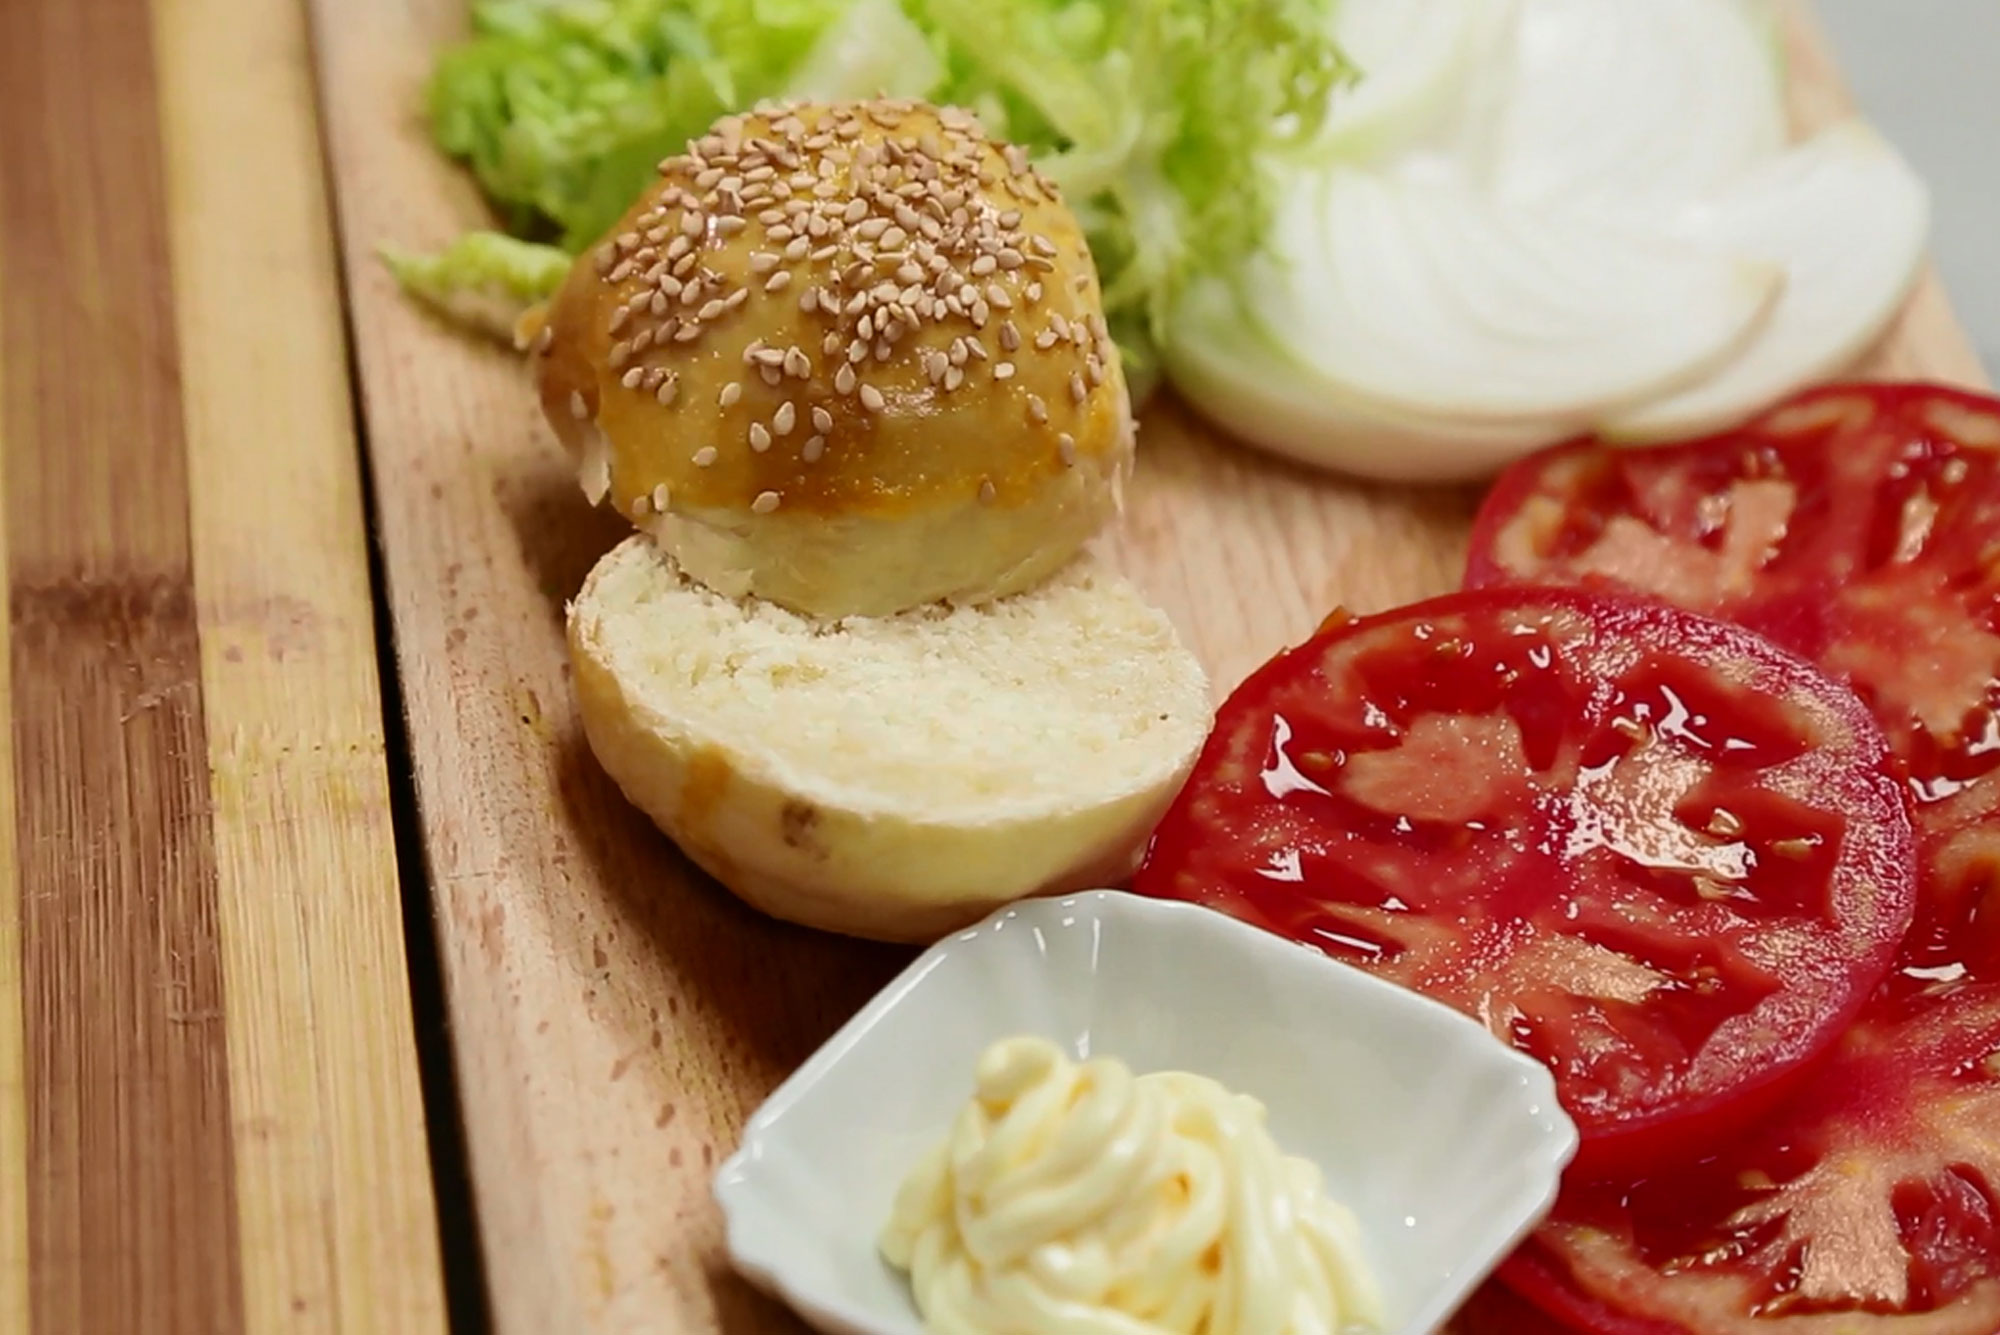 Scuola di cucina: pane per hamburger, come prepararlo